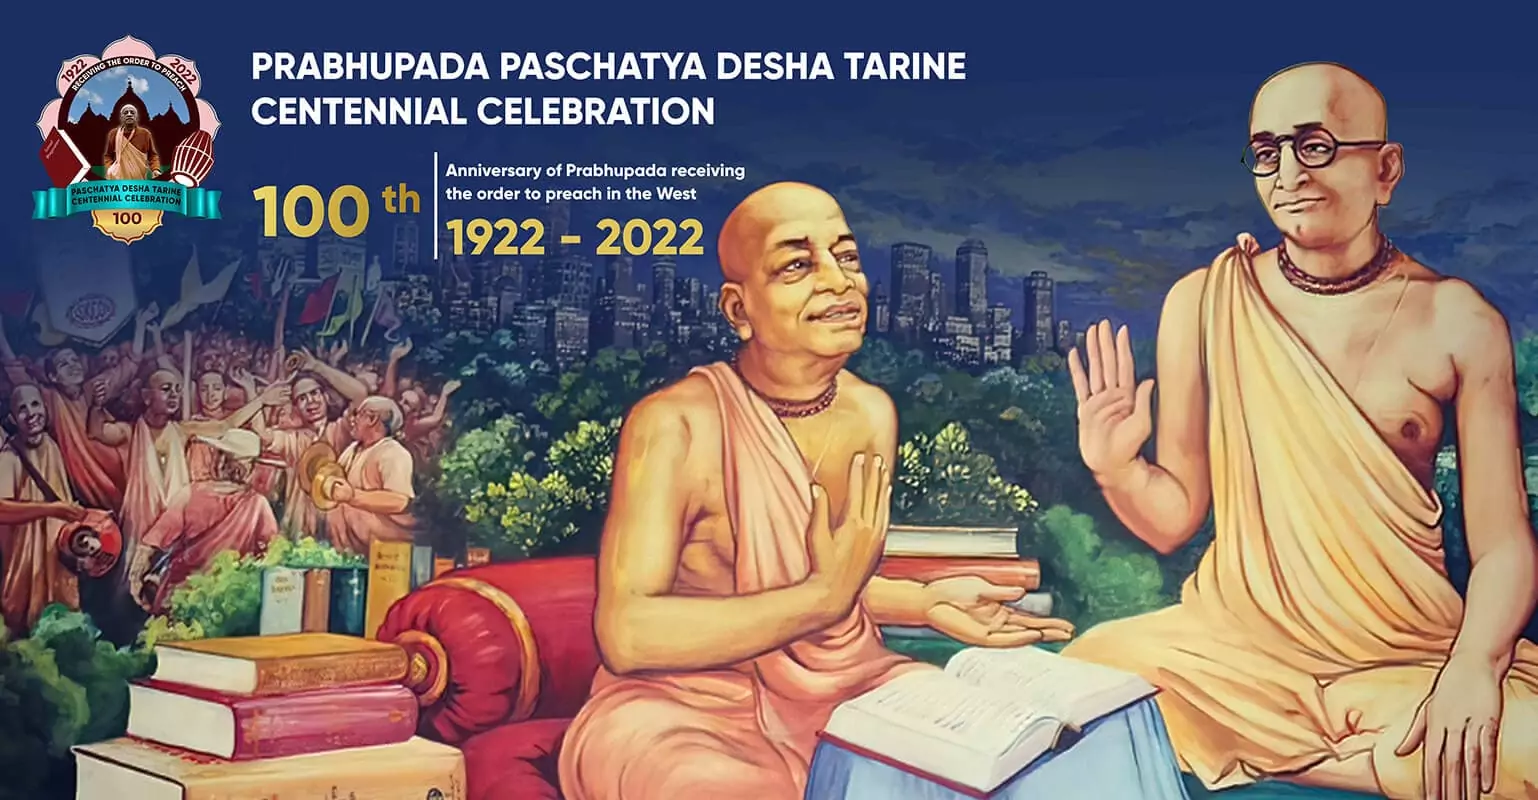 El centenario de Srila Prabhupada recibiendo la orden de predicar, 1922-2022